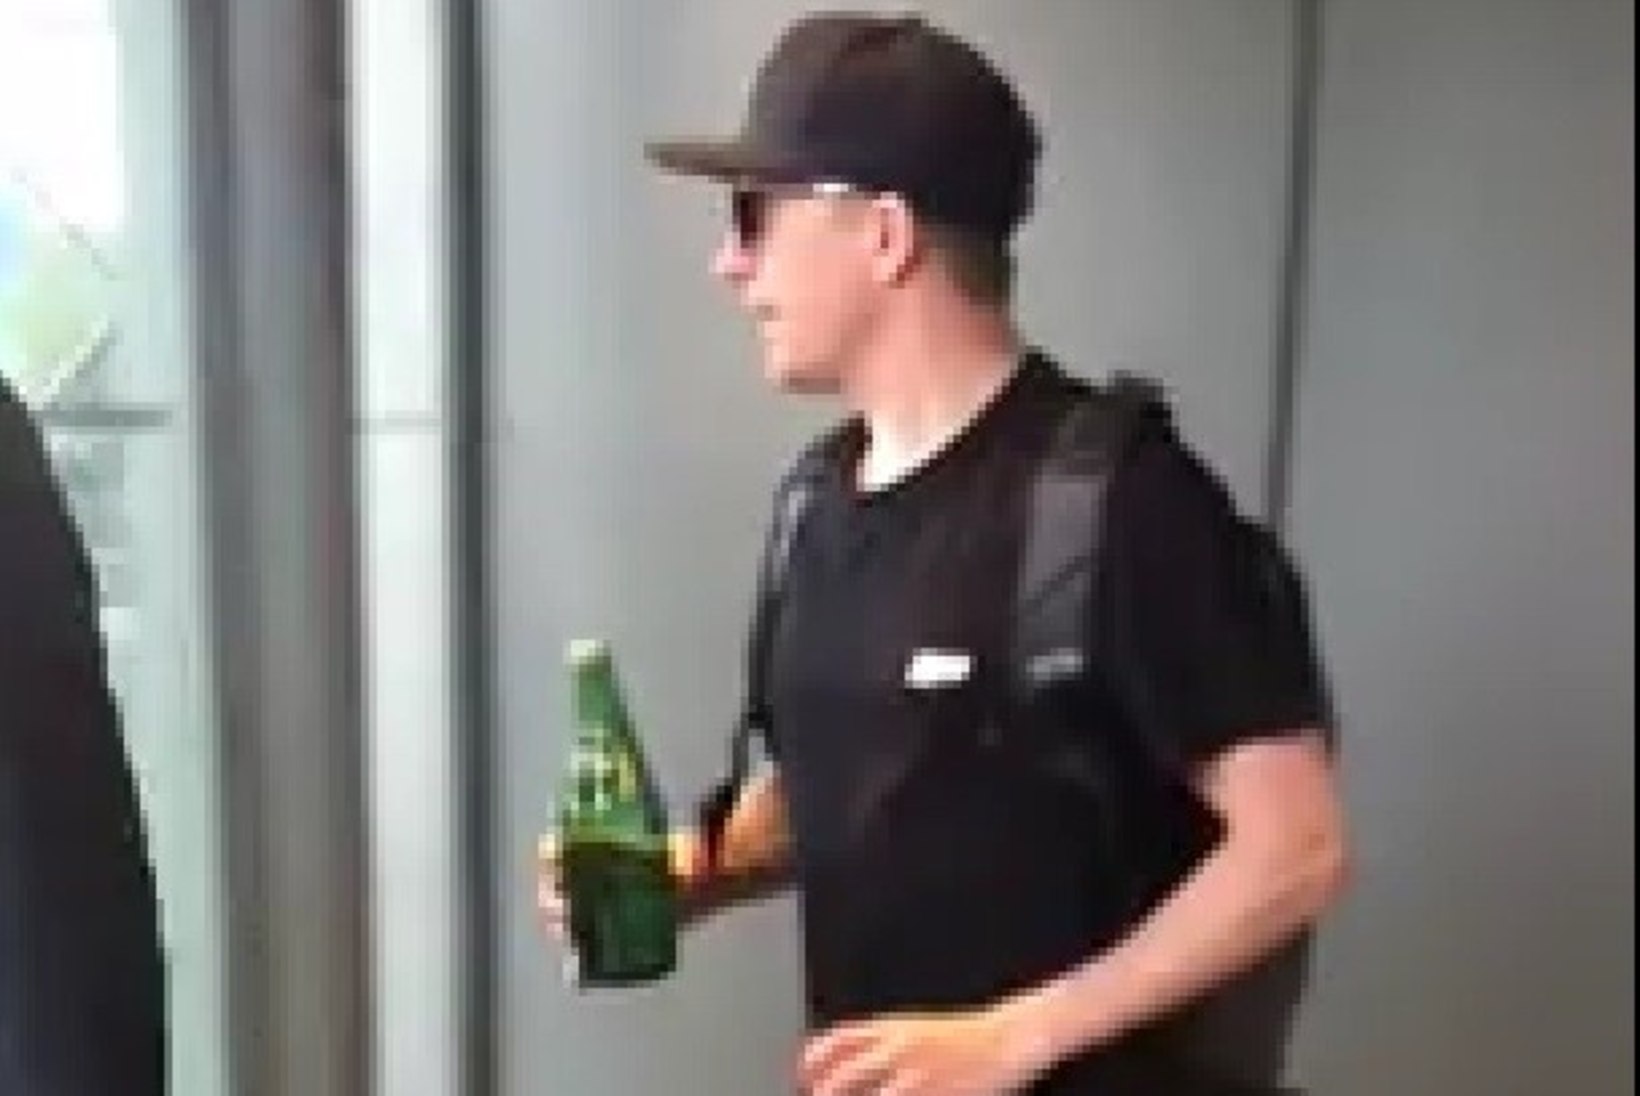 VIDEO | Kimi Räikkönenil juhtus Hiina hotellist välja astudes äpardus